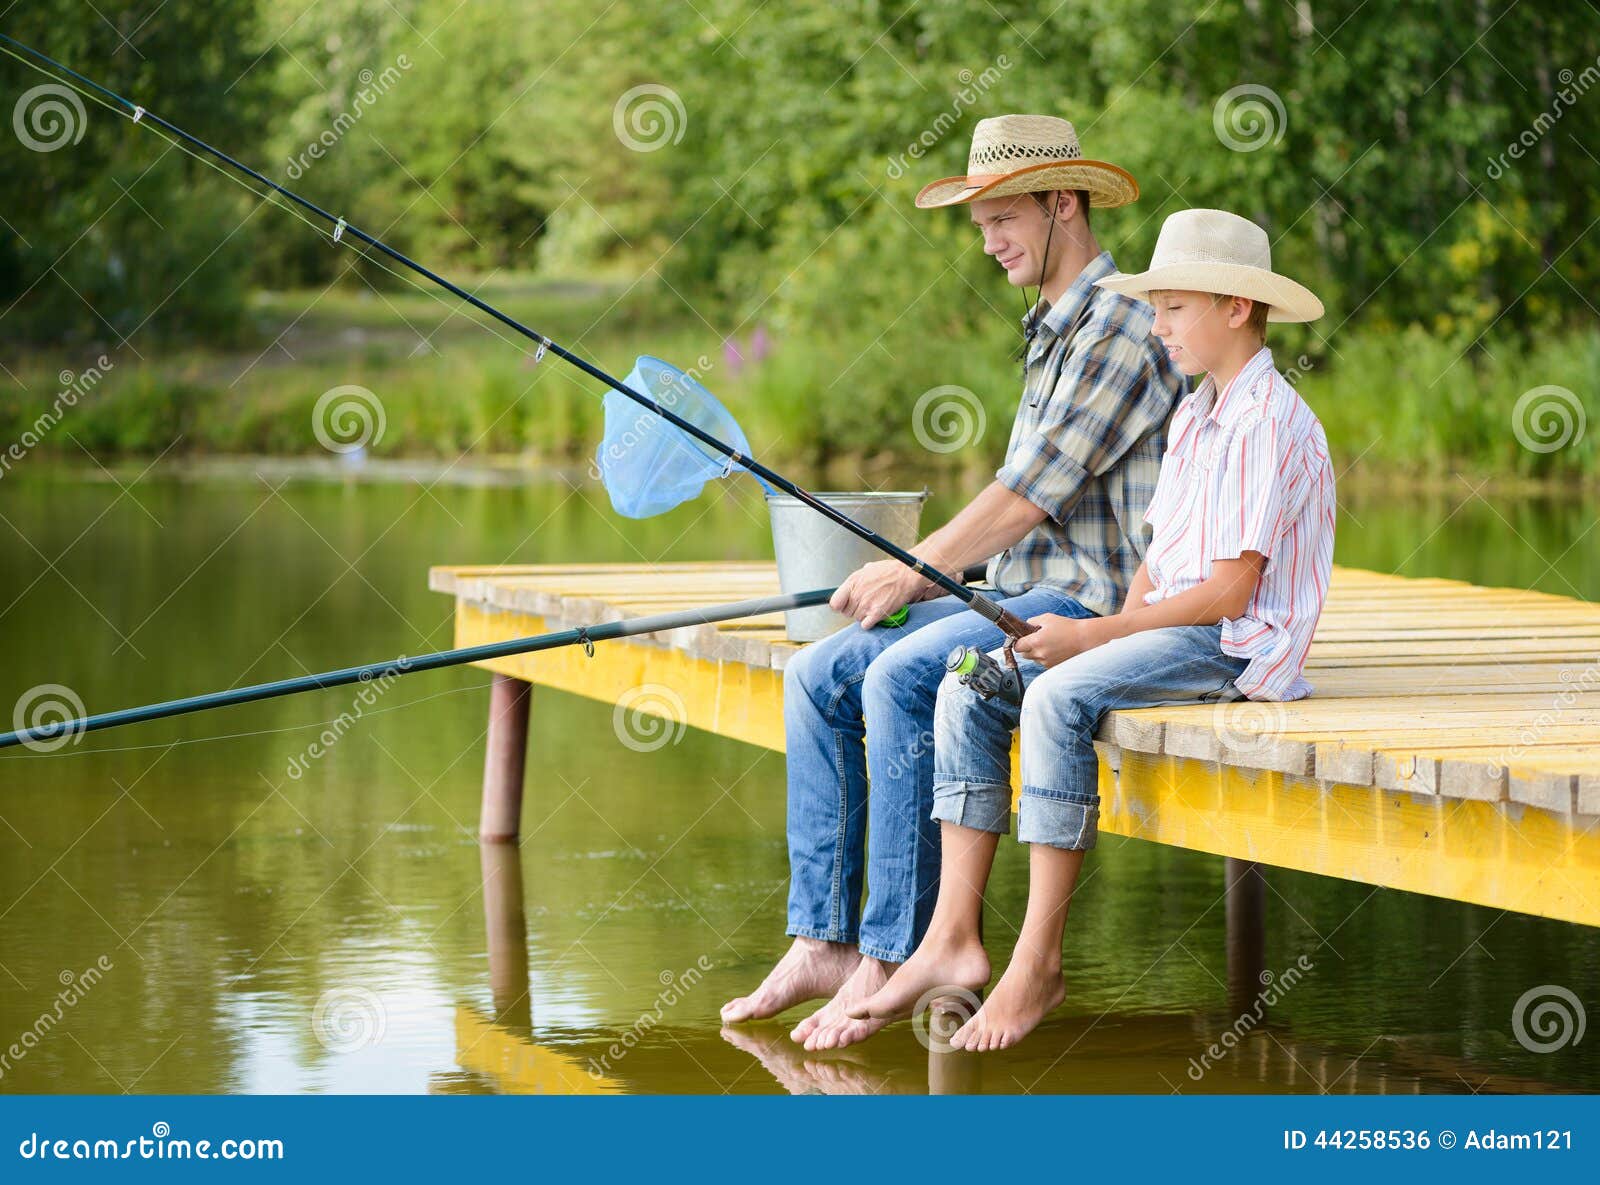 Рыбачим с моста. Мостик рыбака. Мальчик ловит рыбу с мостика. Девушка рыбачит на мостике. Фото на мостике рыбачат.